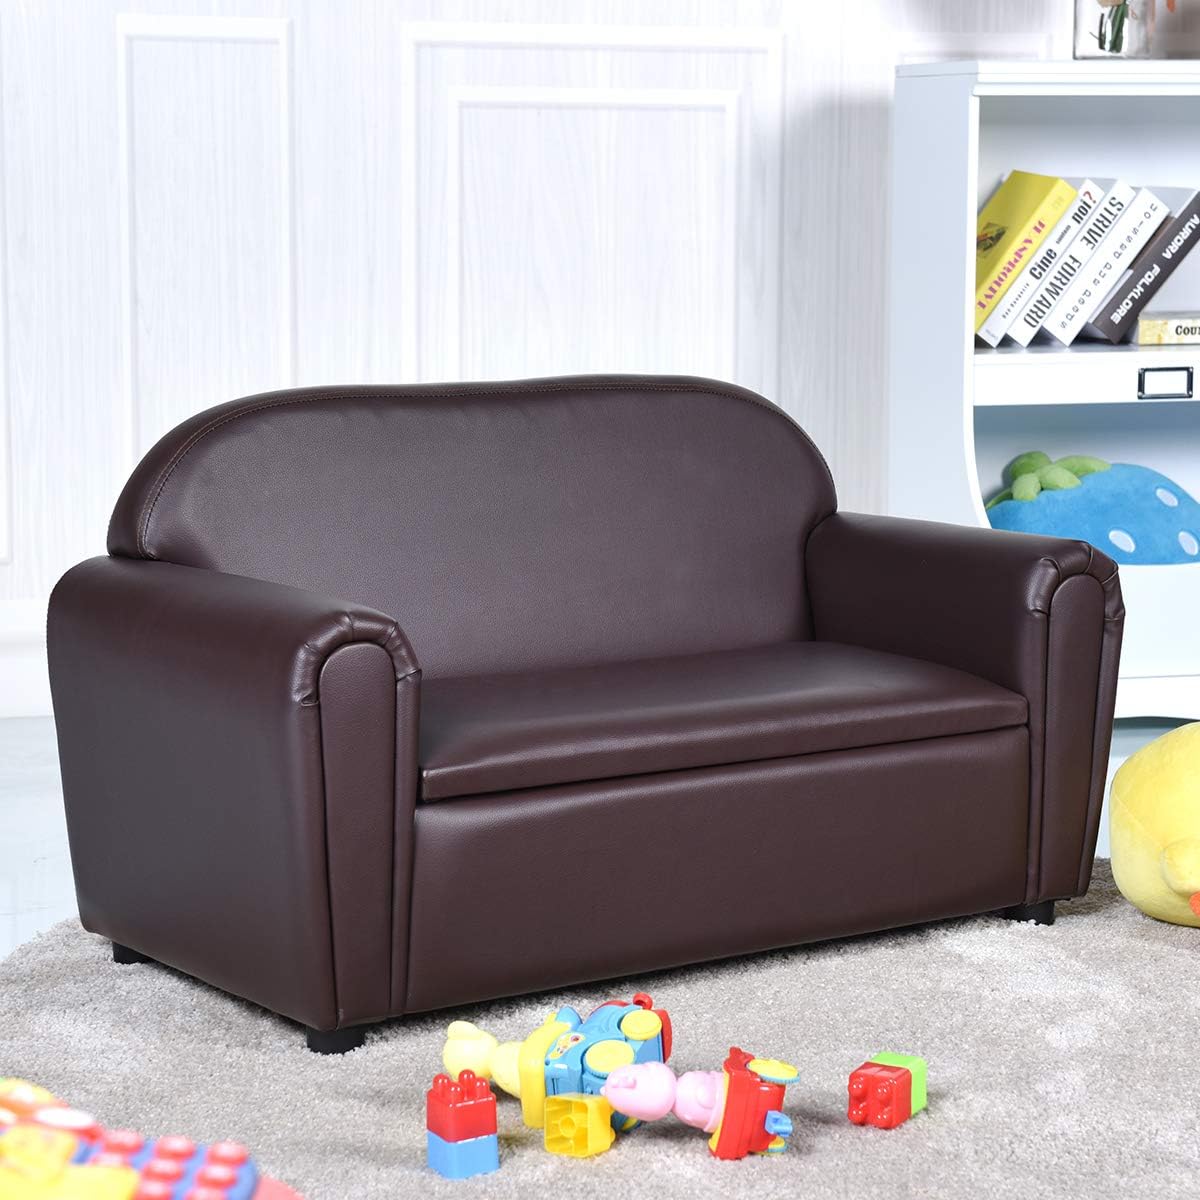 Sofá para niños, sofá de doble asiento para niños con almacenamiento debajo del